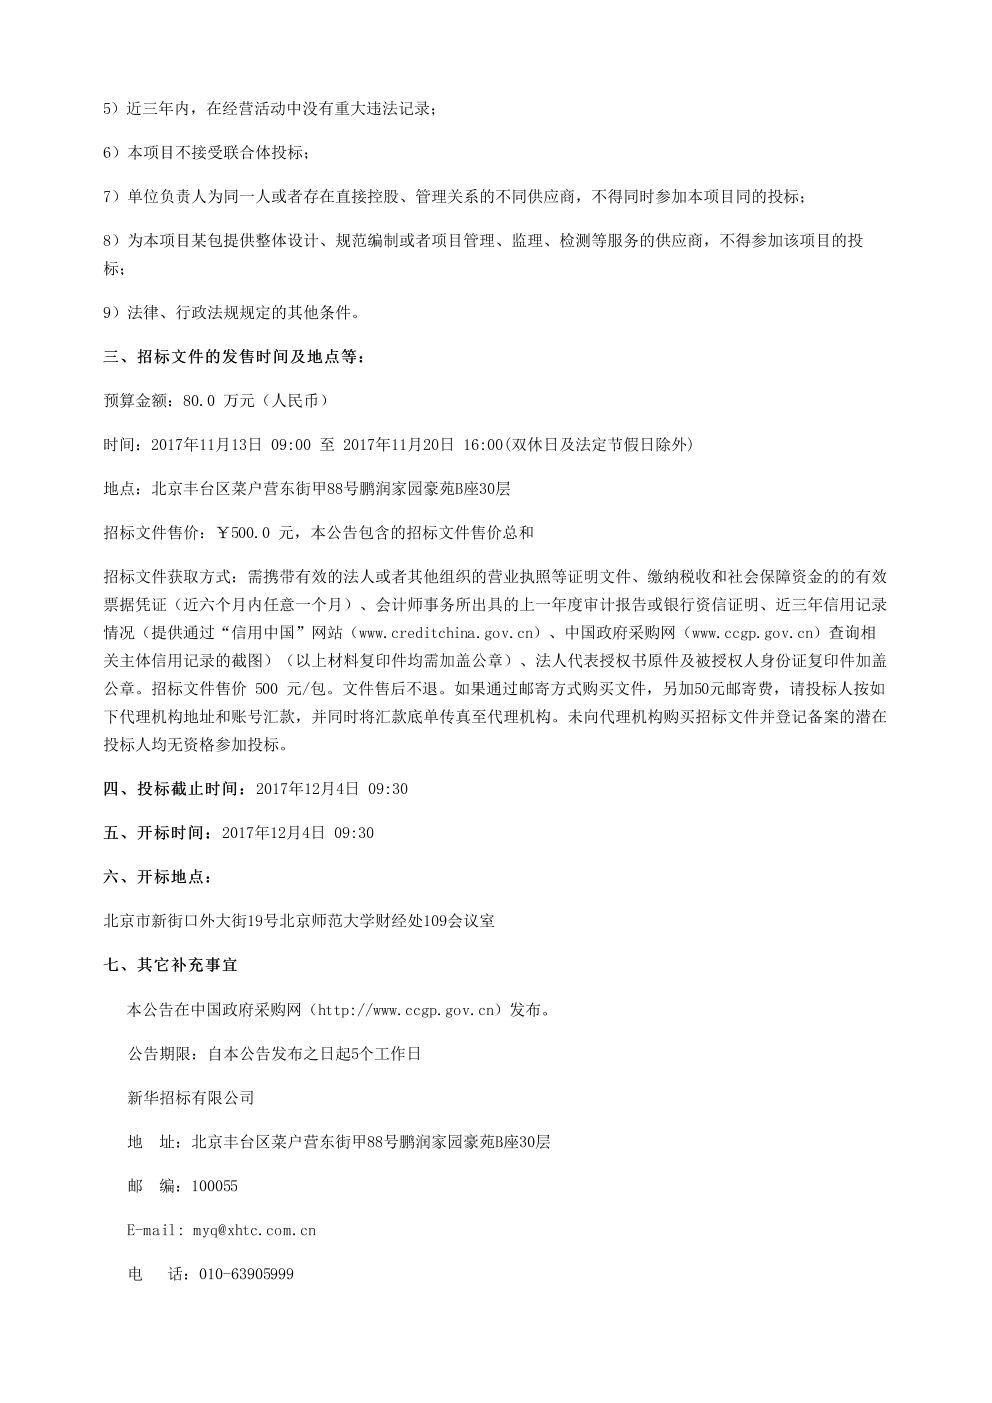 北京师范大学远程视频会议系统建设项目(WT 